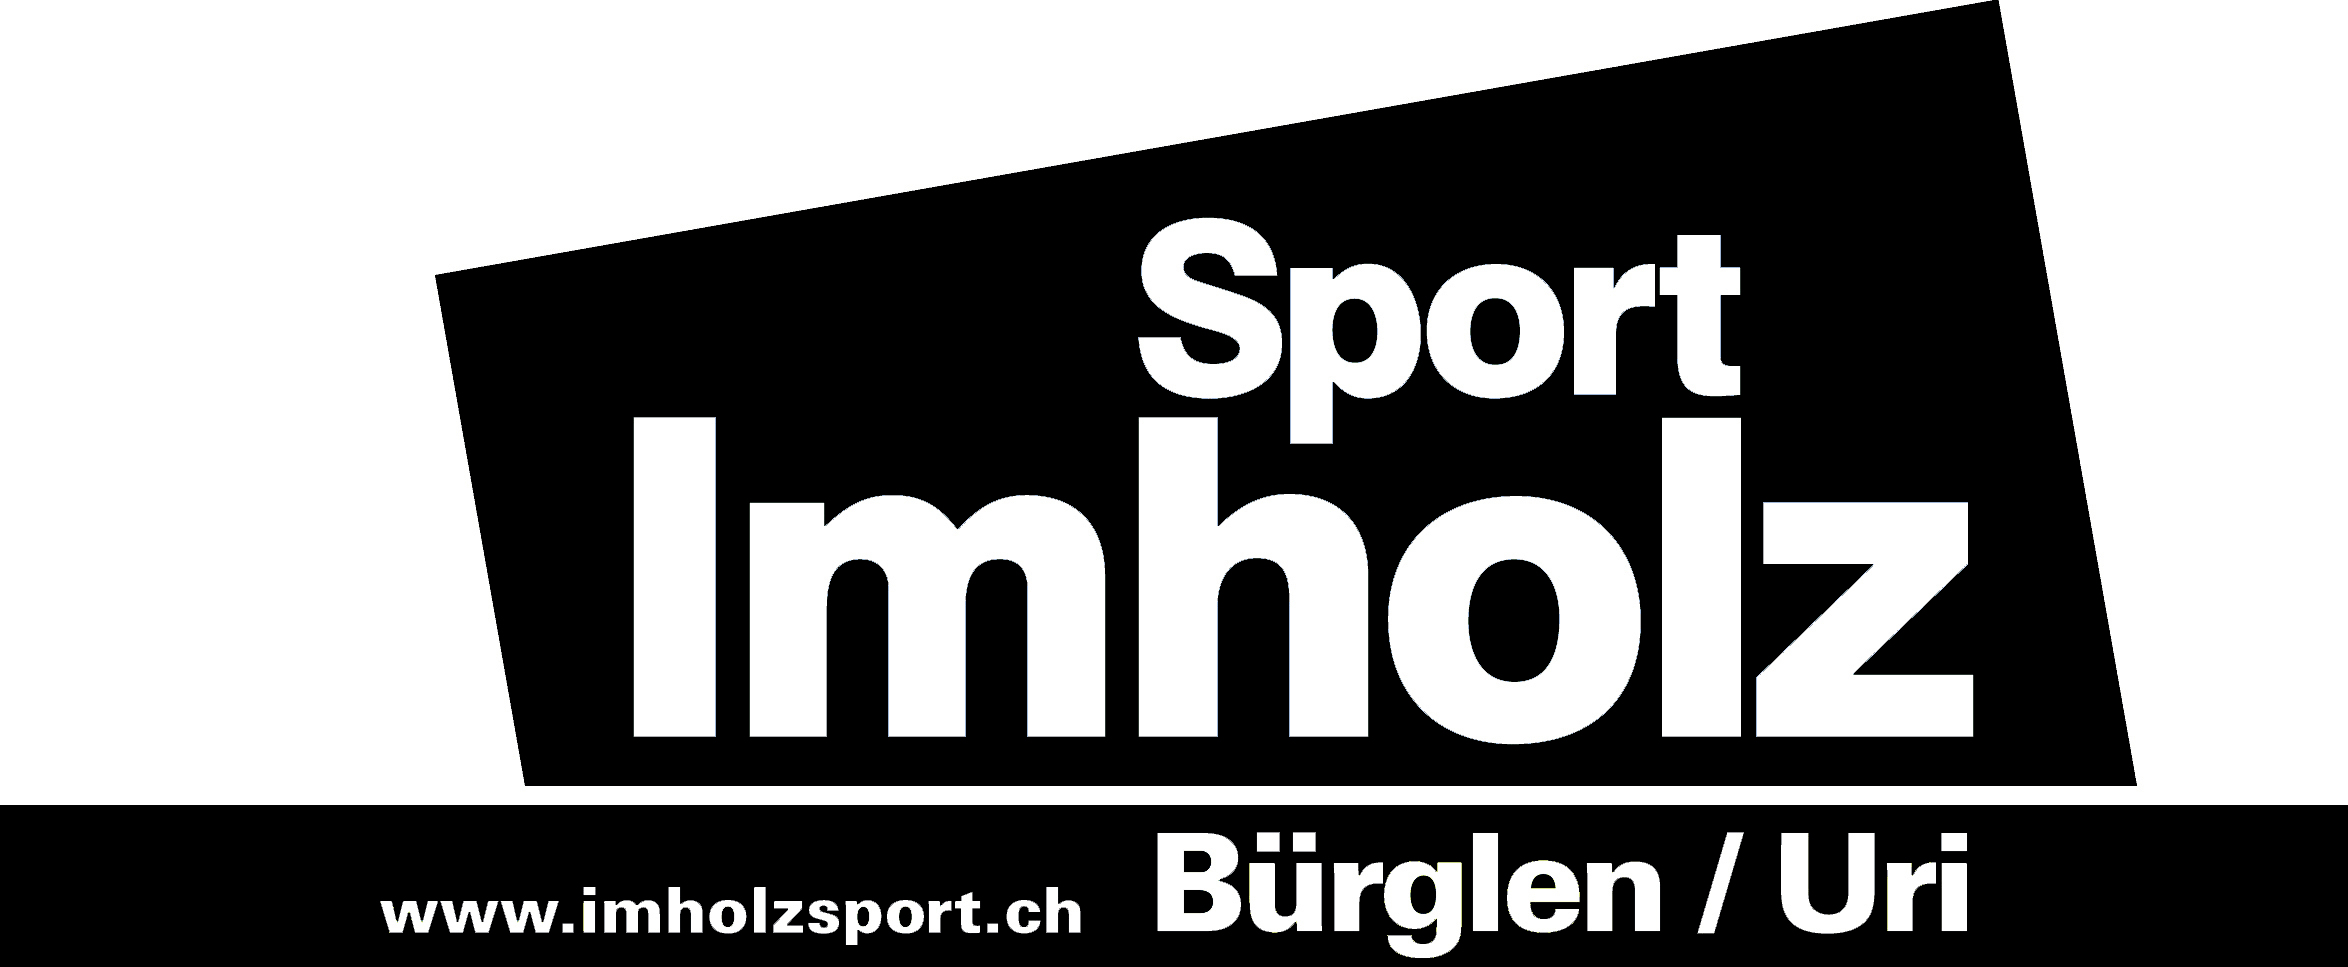 Imholz Sport Logo